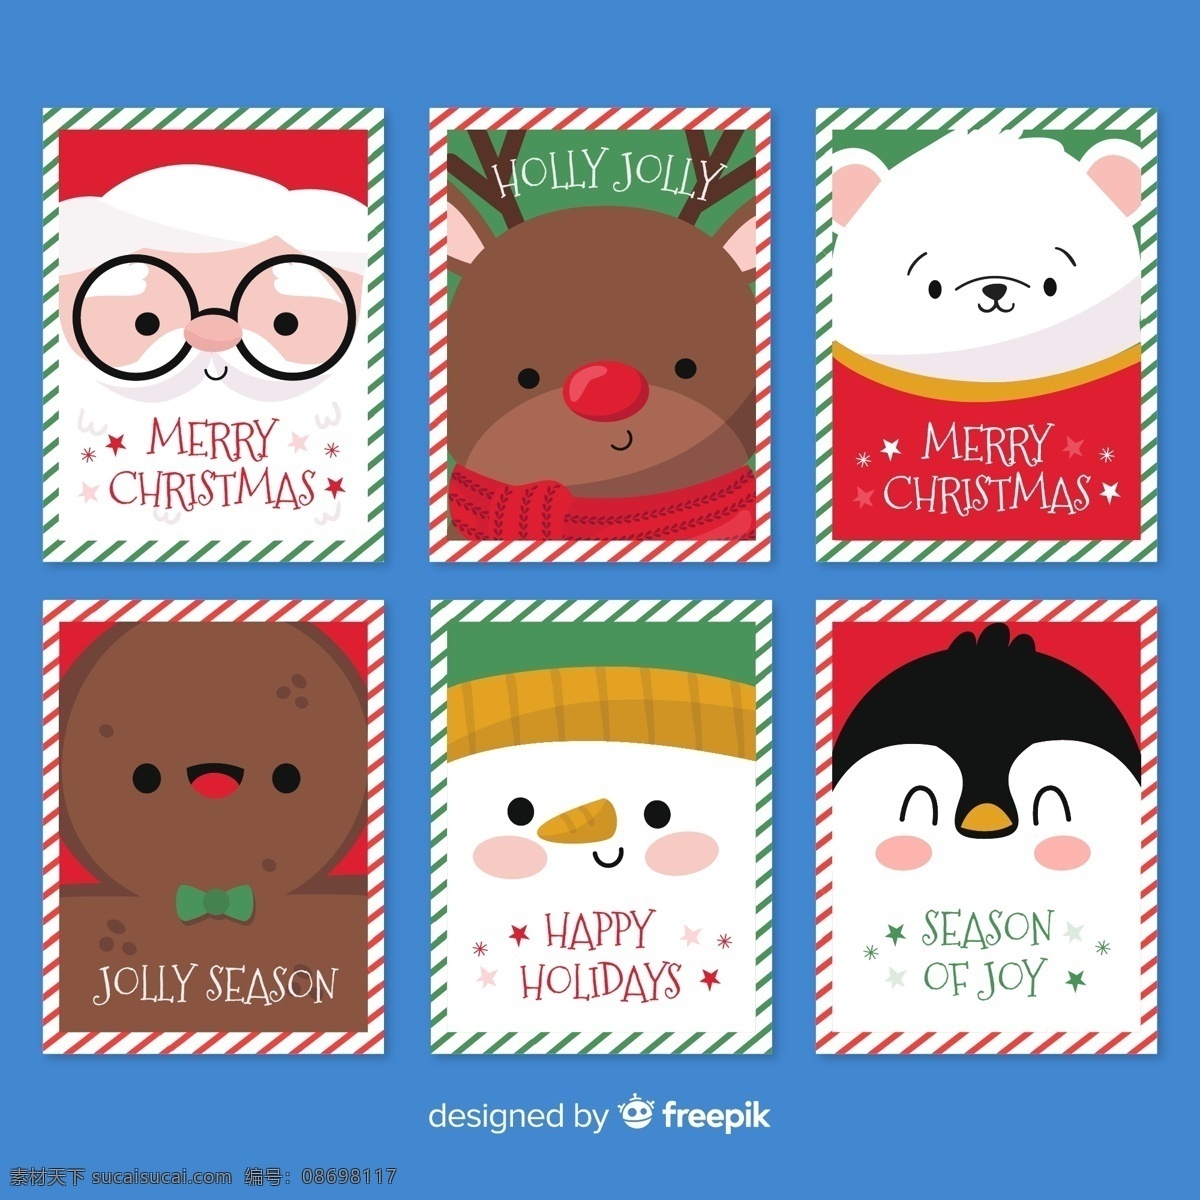 圣诞 卡片 贺卡 icon 圣诞老人 圣诞树 节日 新年 线稿 手绘 插画 品牌设计 包装设计 图标设计 手绘图标 精美插画 节日礼品 卡通设计 圣诞节呦